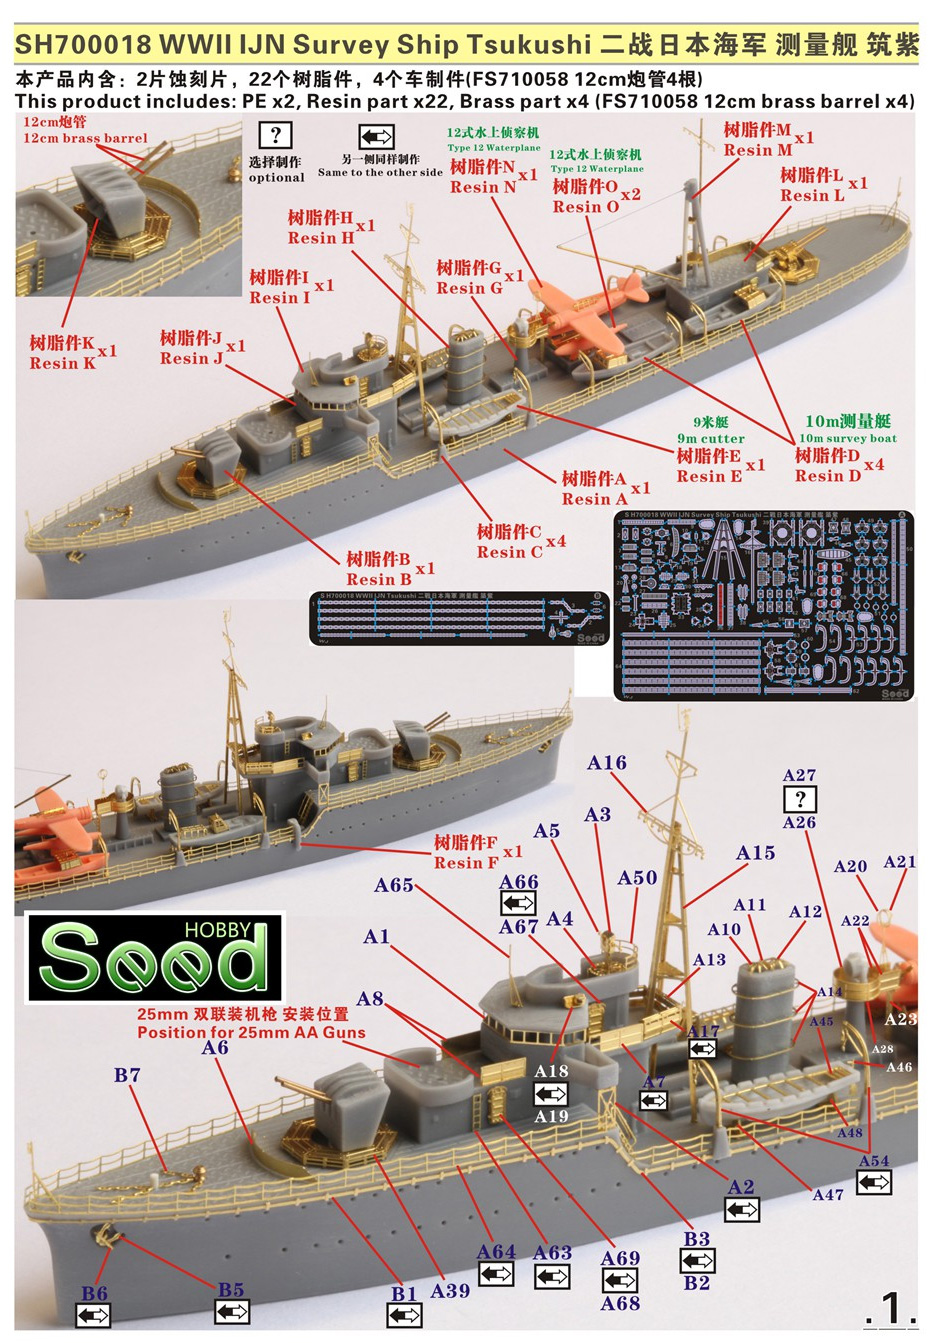 日本海軍 測量艦 筑紫 レジン (Seed HOBBY 1/700 レジンキット No.SH700018) 商品画像_1